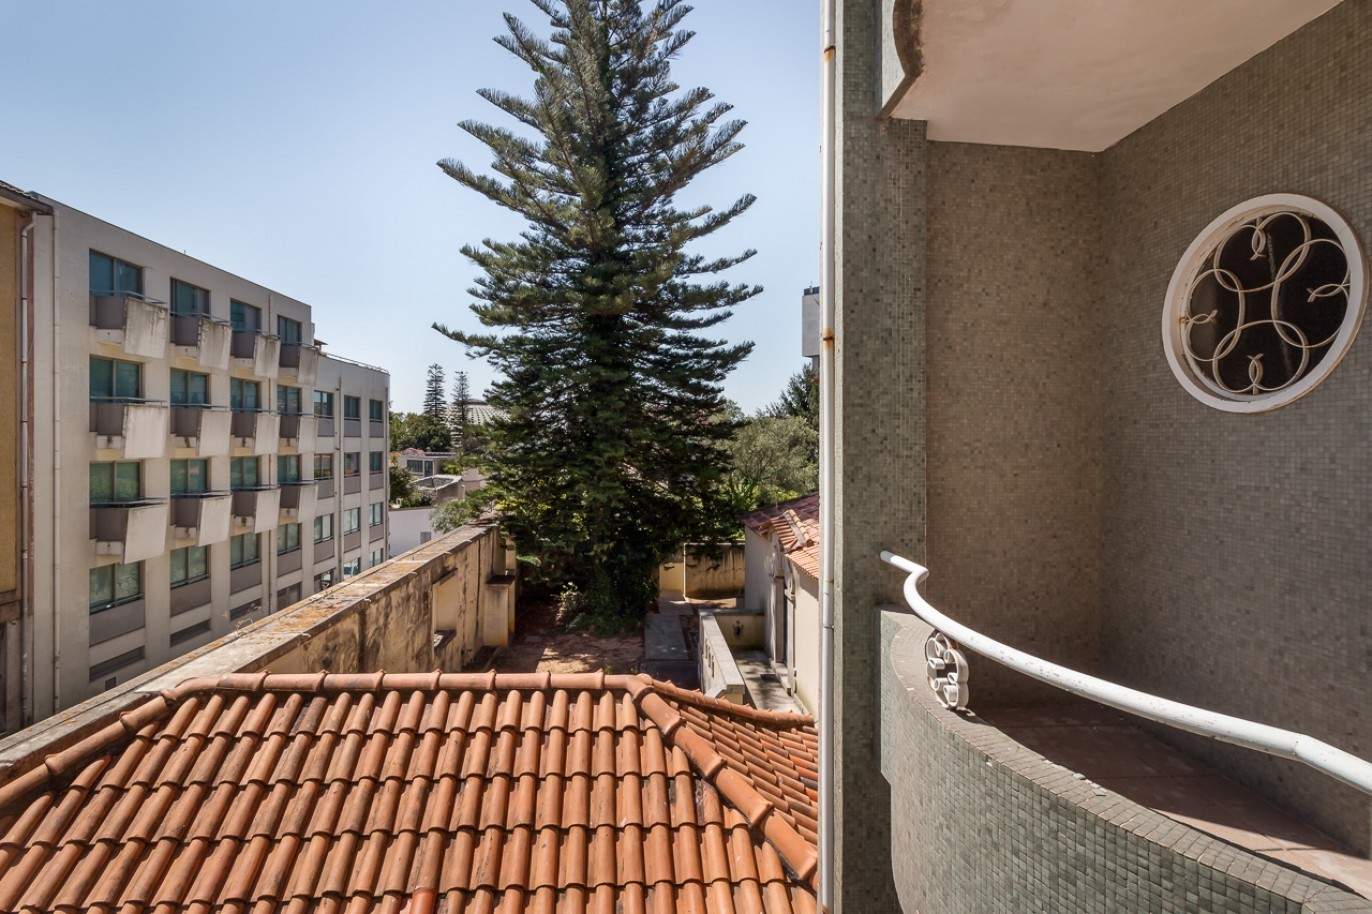 Prédio para venda com 4 apartamentos, Porto, Portugal _85183